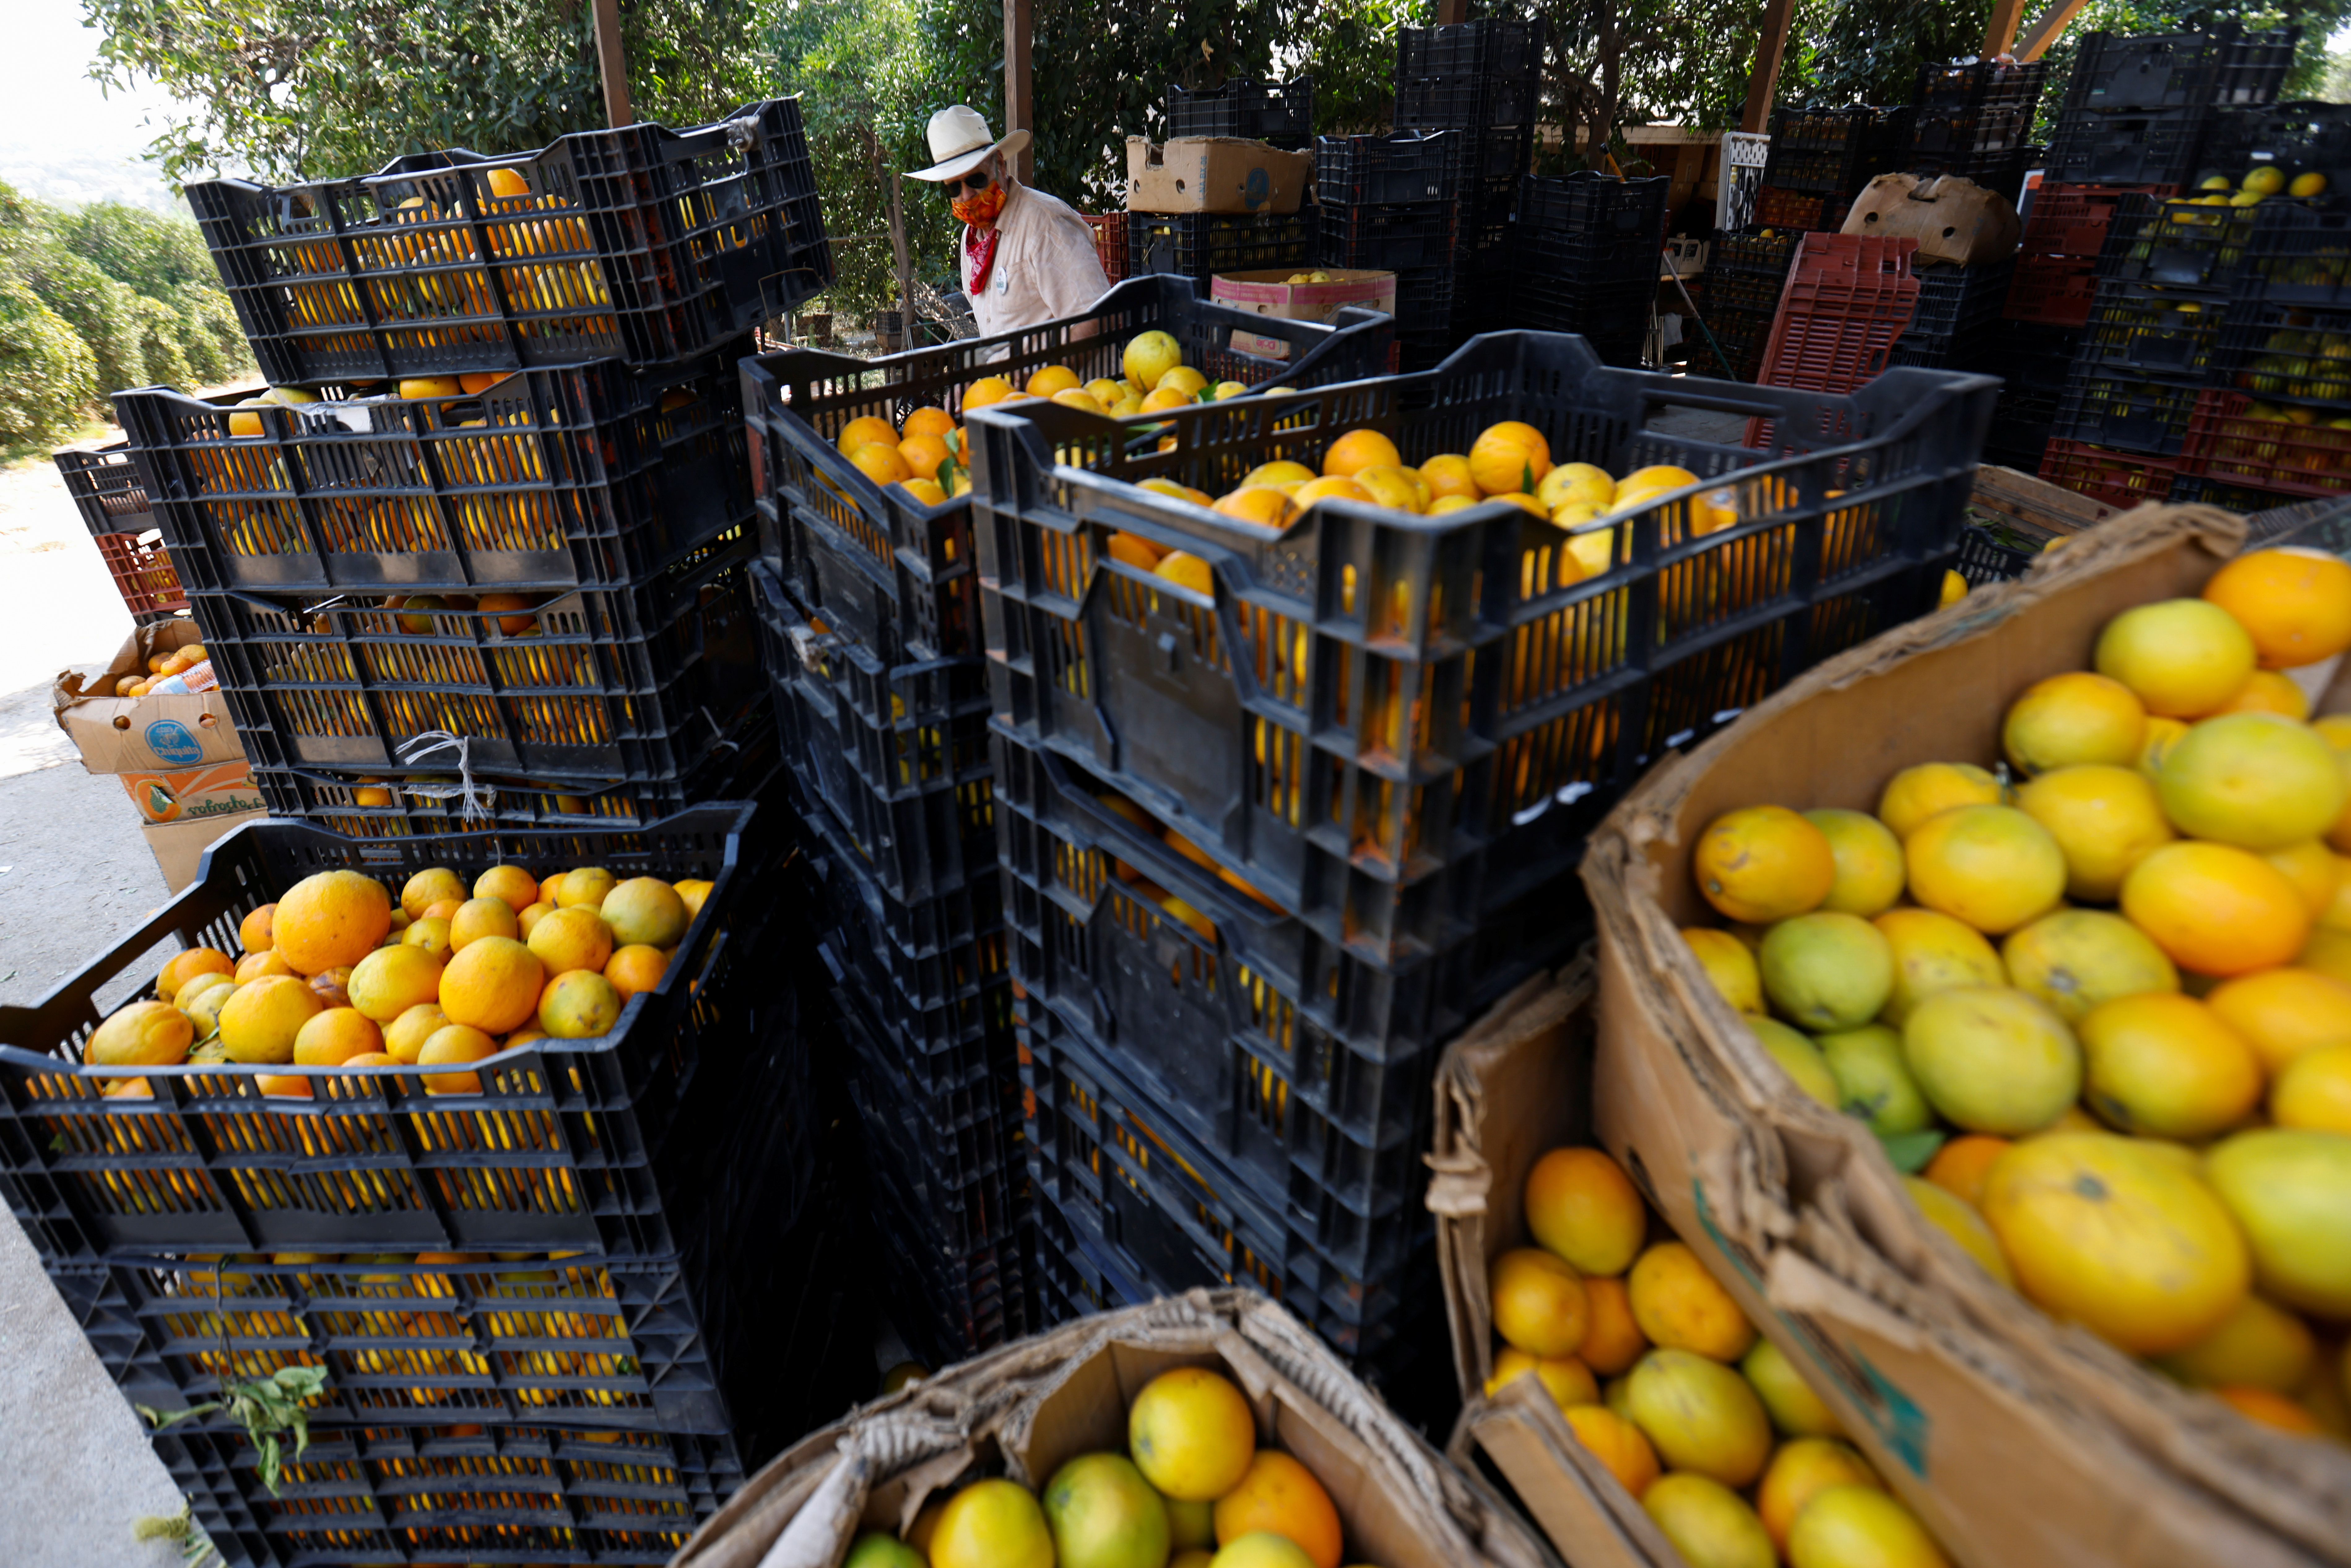 Hace 20 años se producían 200 millones de cajas de naranjas al año en el estado (REUTERS/Mike Blake)